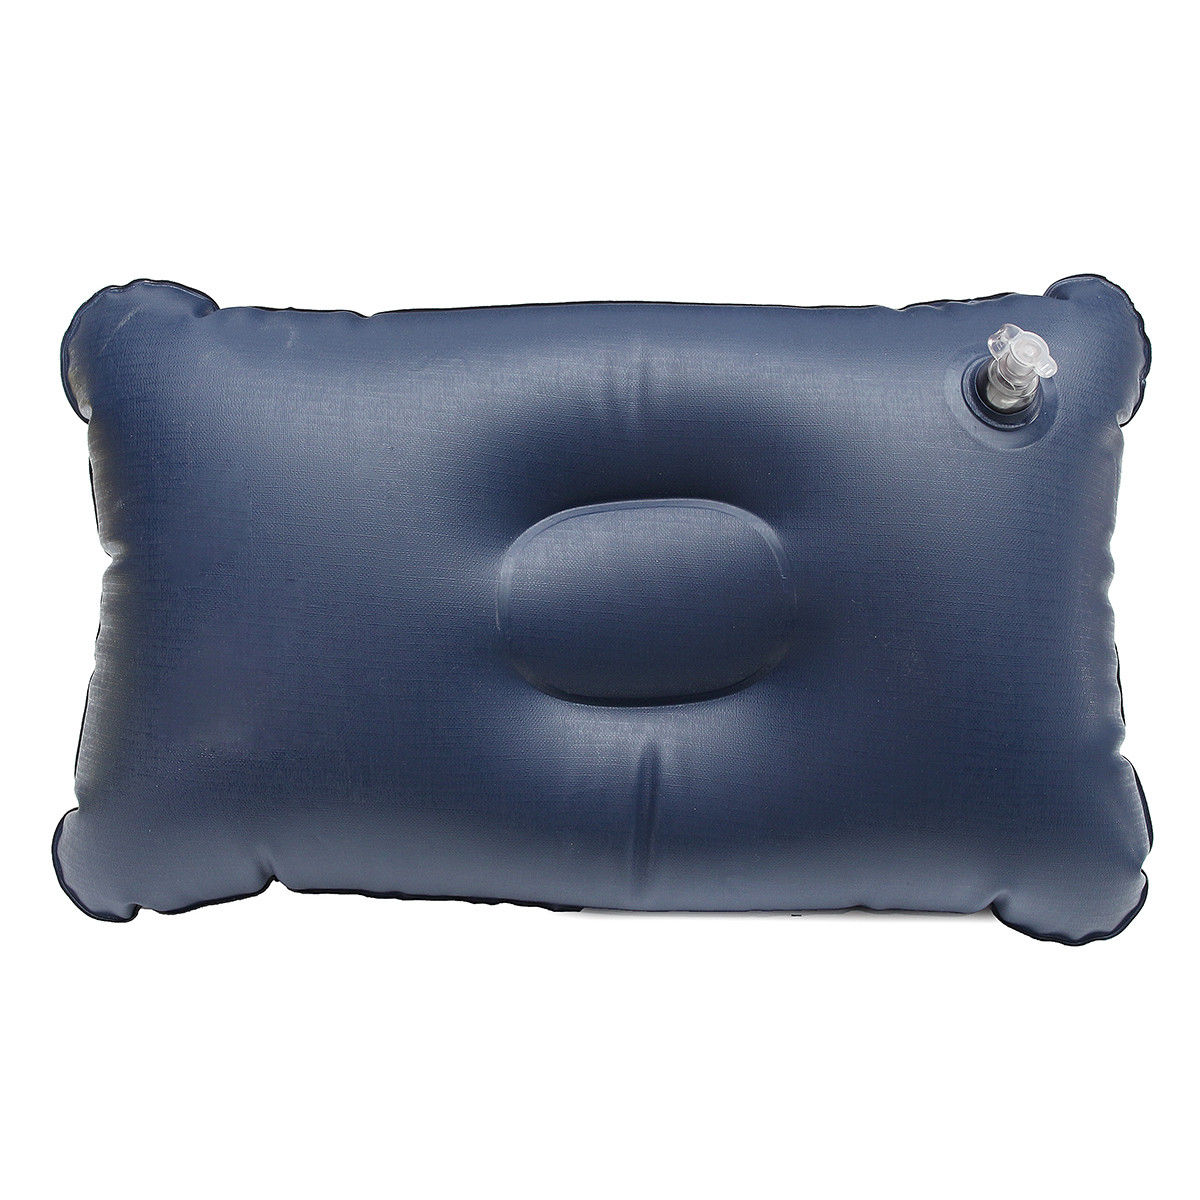 DS BS Car Travel Inflatable Mattress Air Cushion Bed Black